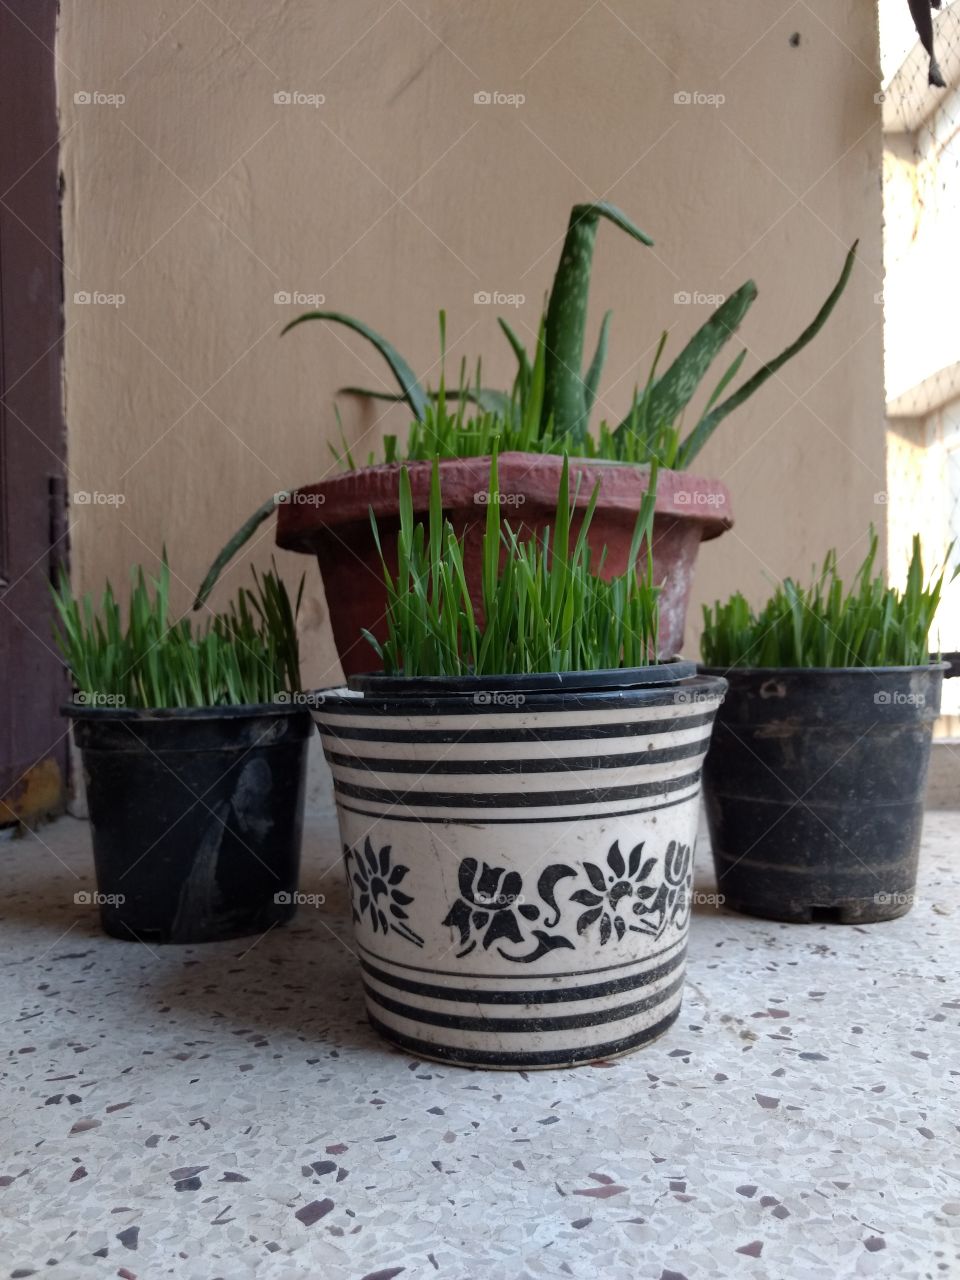 pots of wheatgrass and aloe vera.